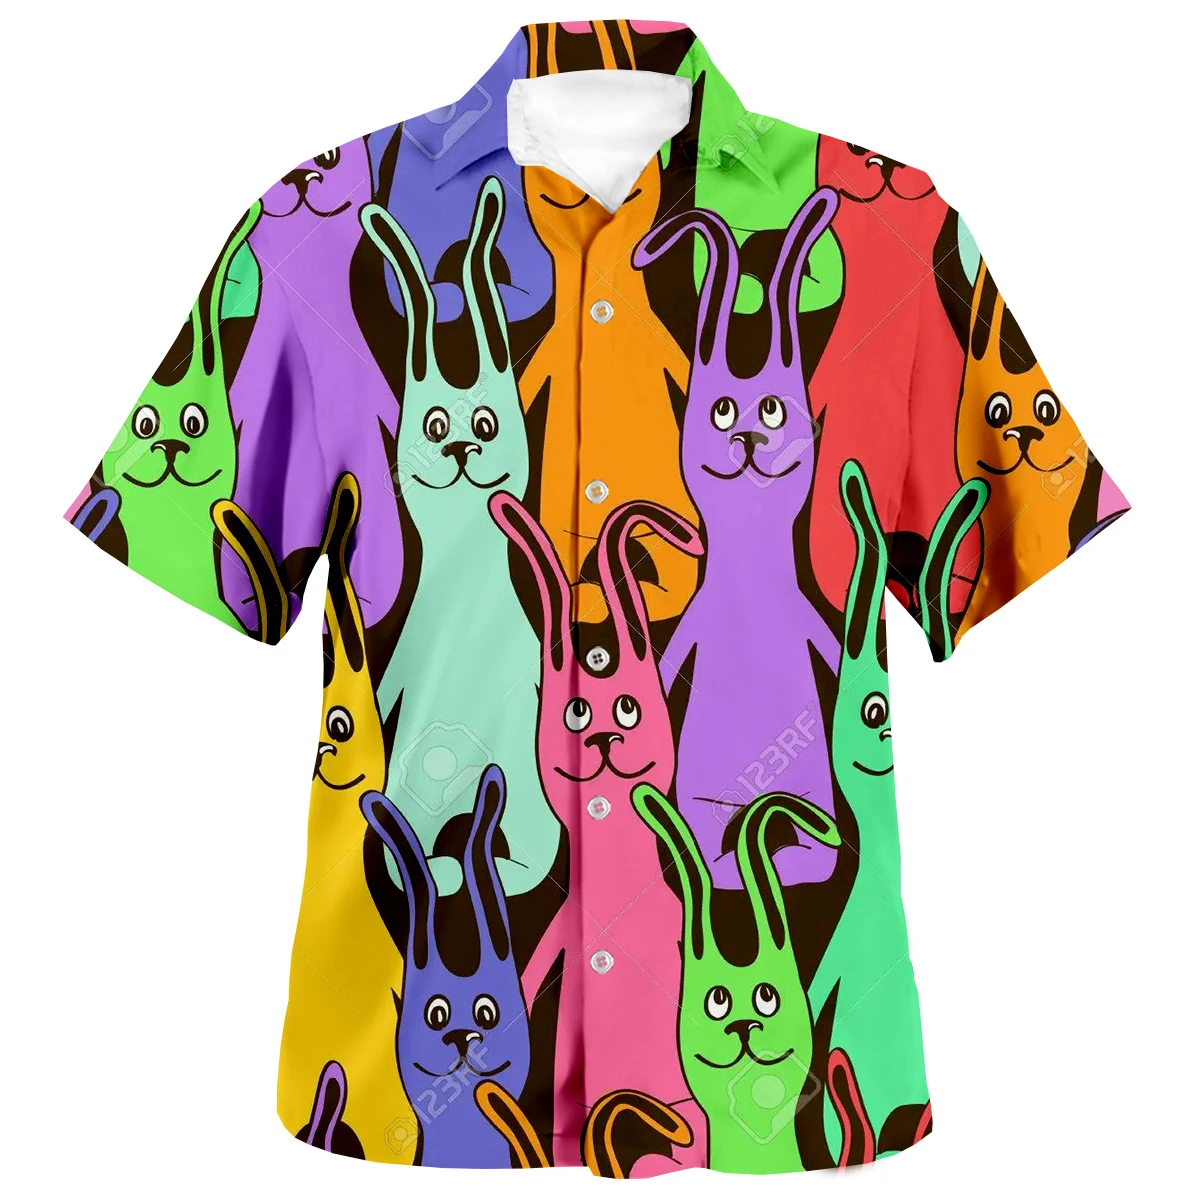 2022 Summer Men 3D Print Hawaiian Shirts Funny Bunny Printed Loose Breathable Shirts Beach Party Short Sleeve Tops